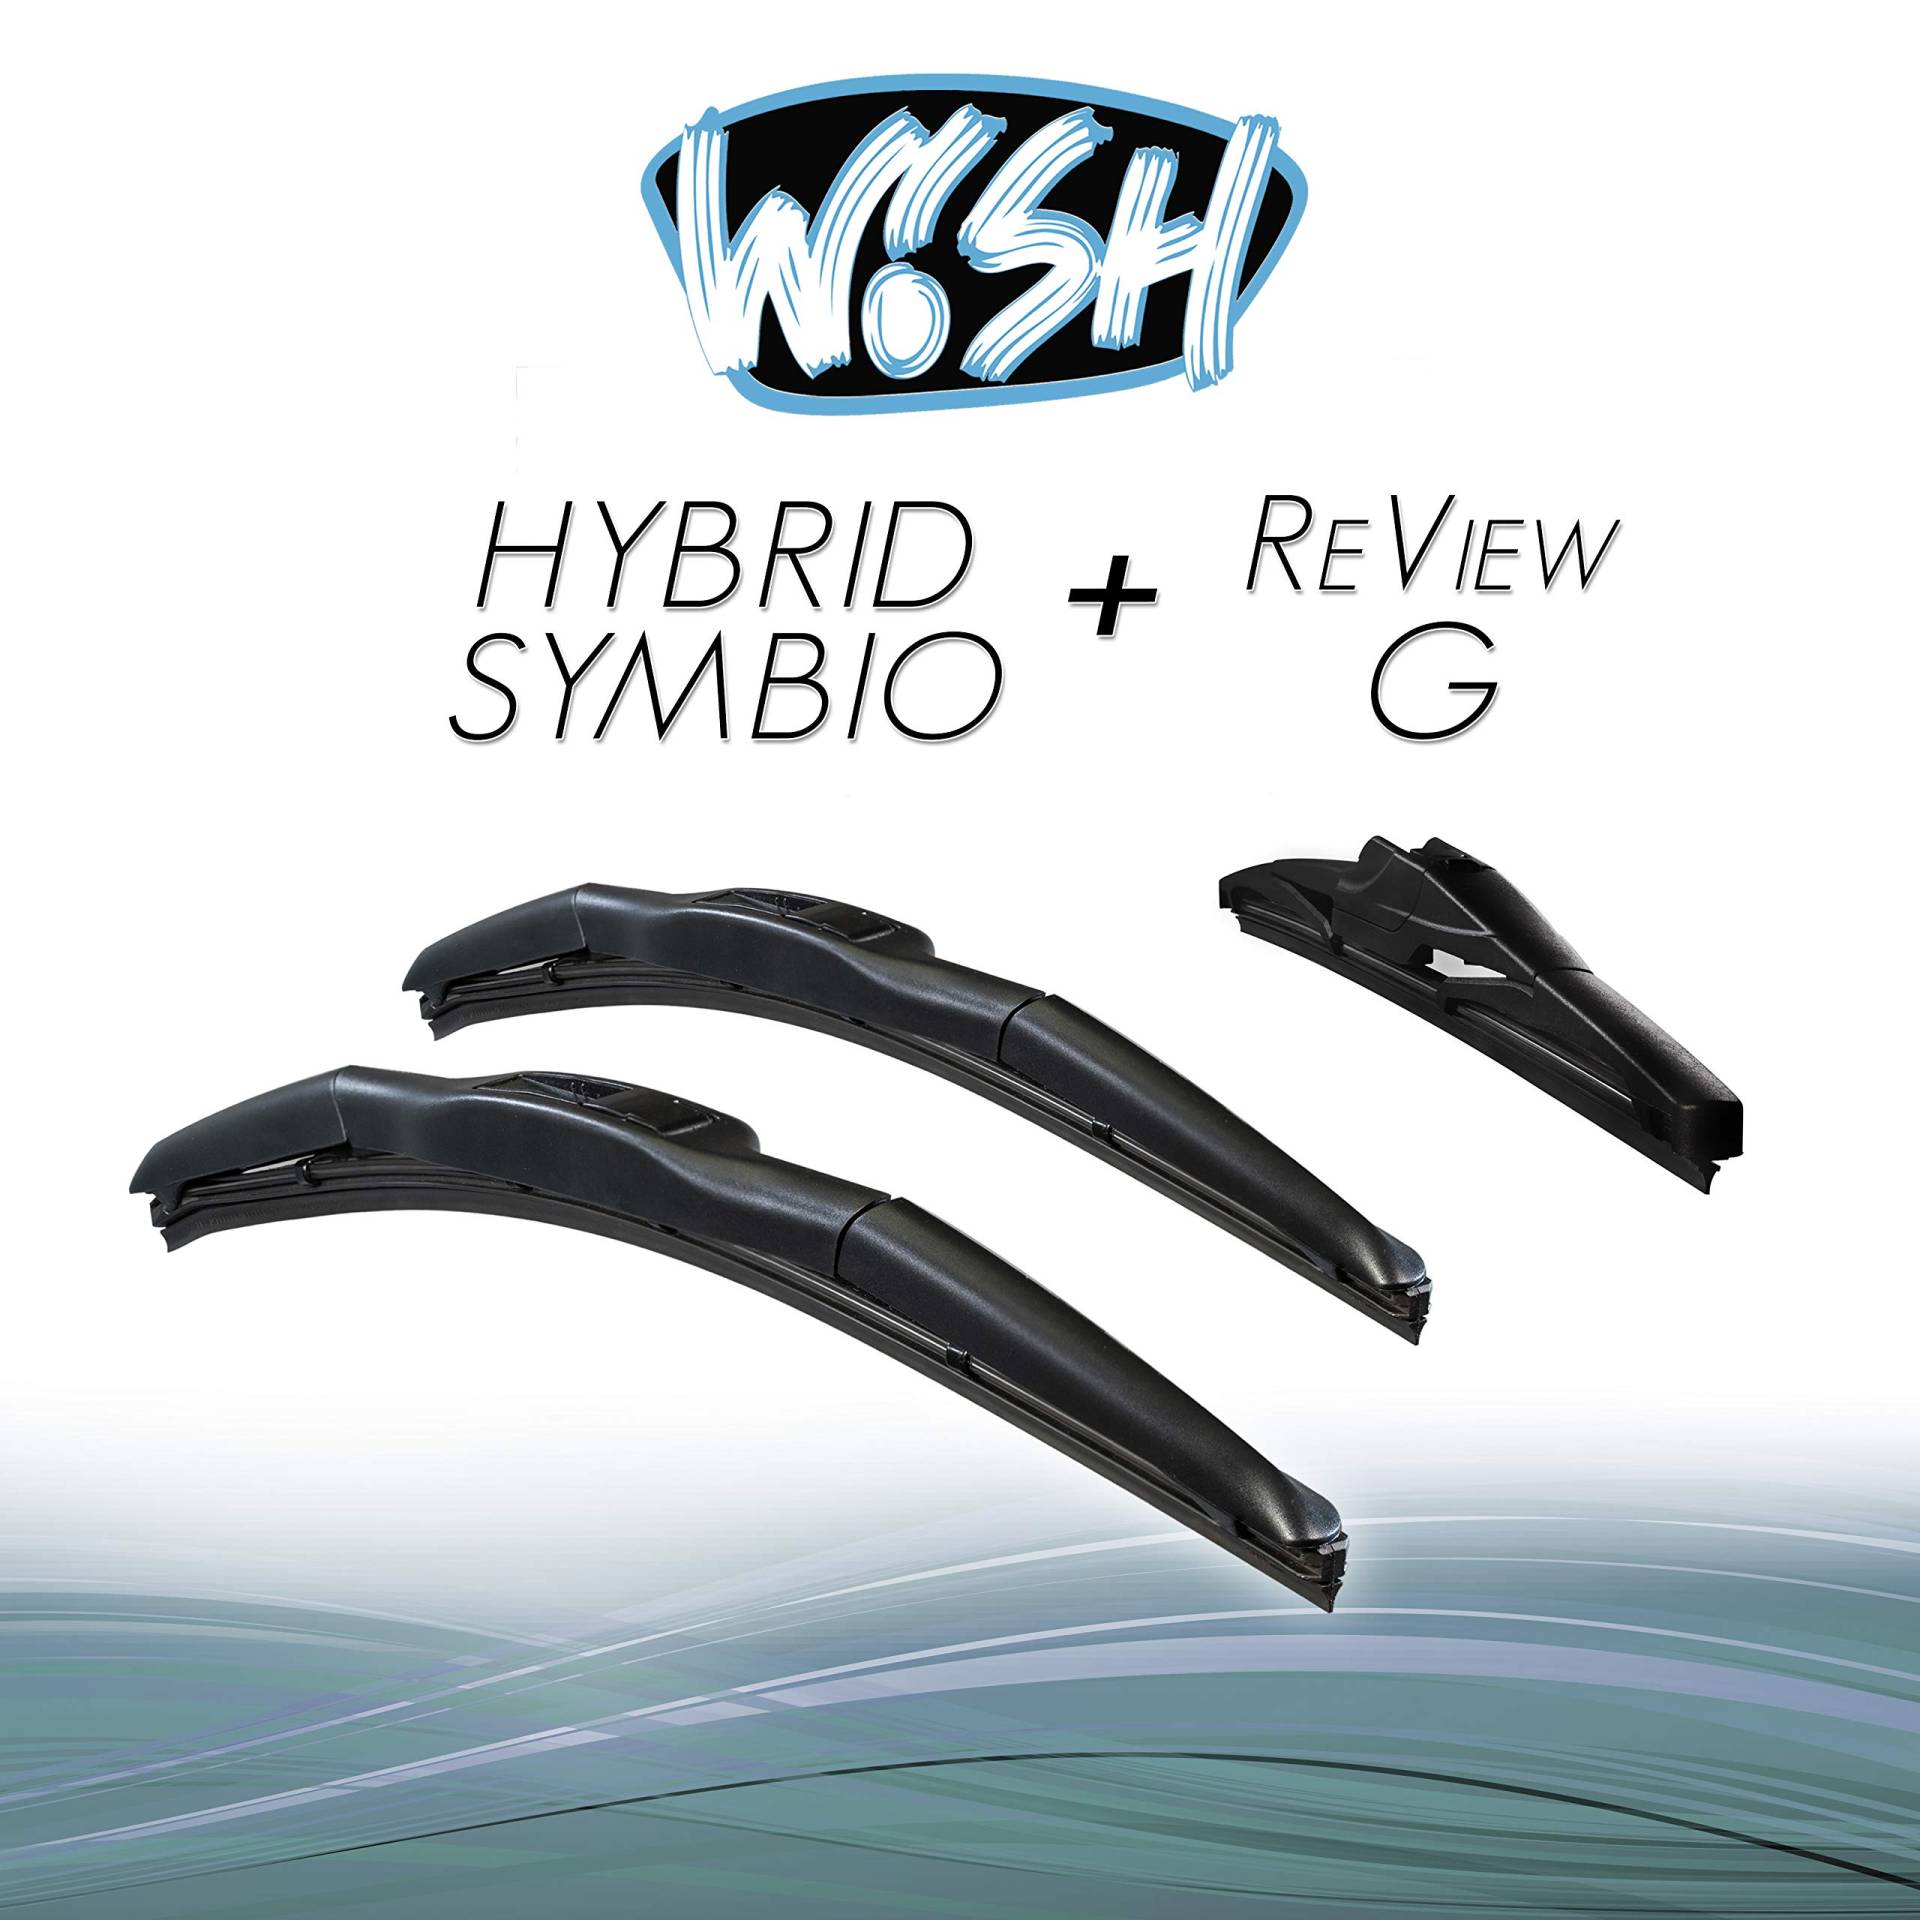 Wish® Hybrid Symbio Satz Front + Heck Scheibenwischer Länge: 26" 650mm / 14" 350mm / 10" 250mm Wischblätter Vorne und Hinten Hybrid-Scheibenwischer + Review G HS26.14.RG10 von Wish